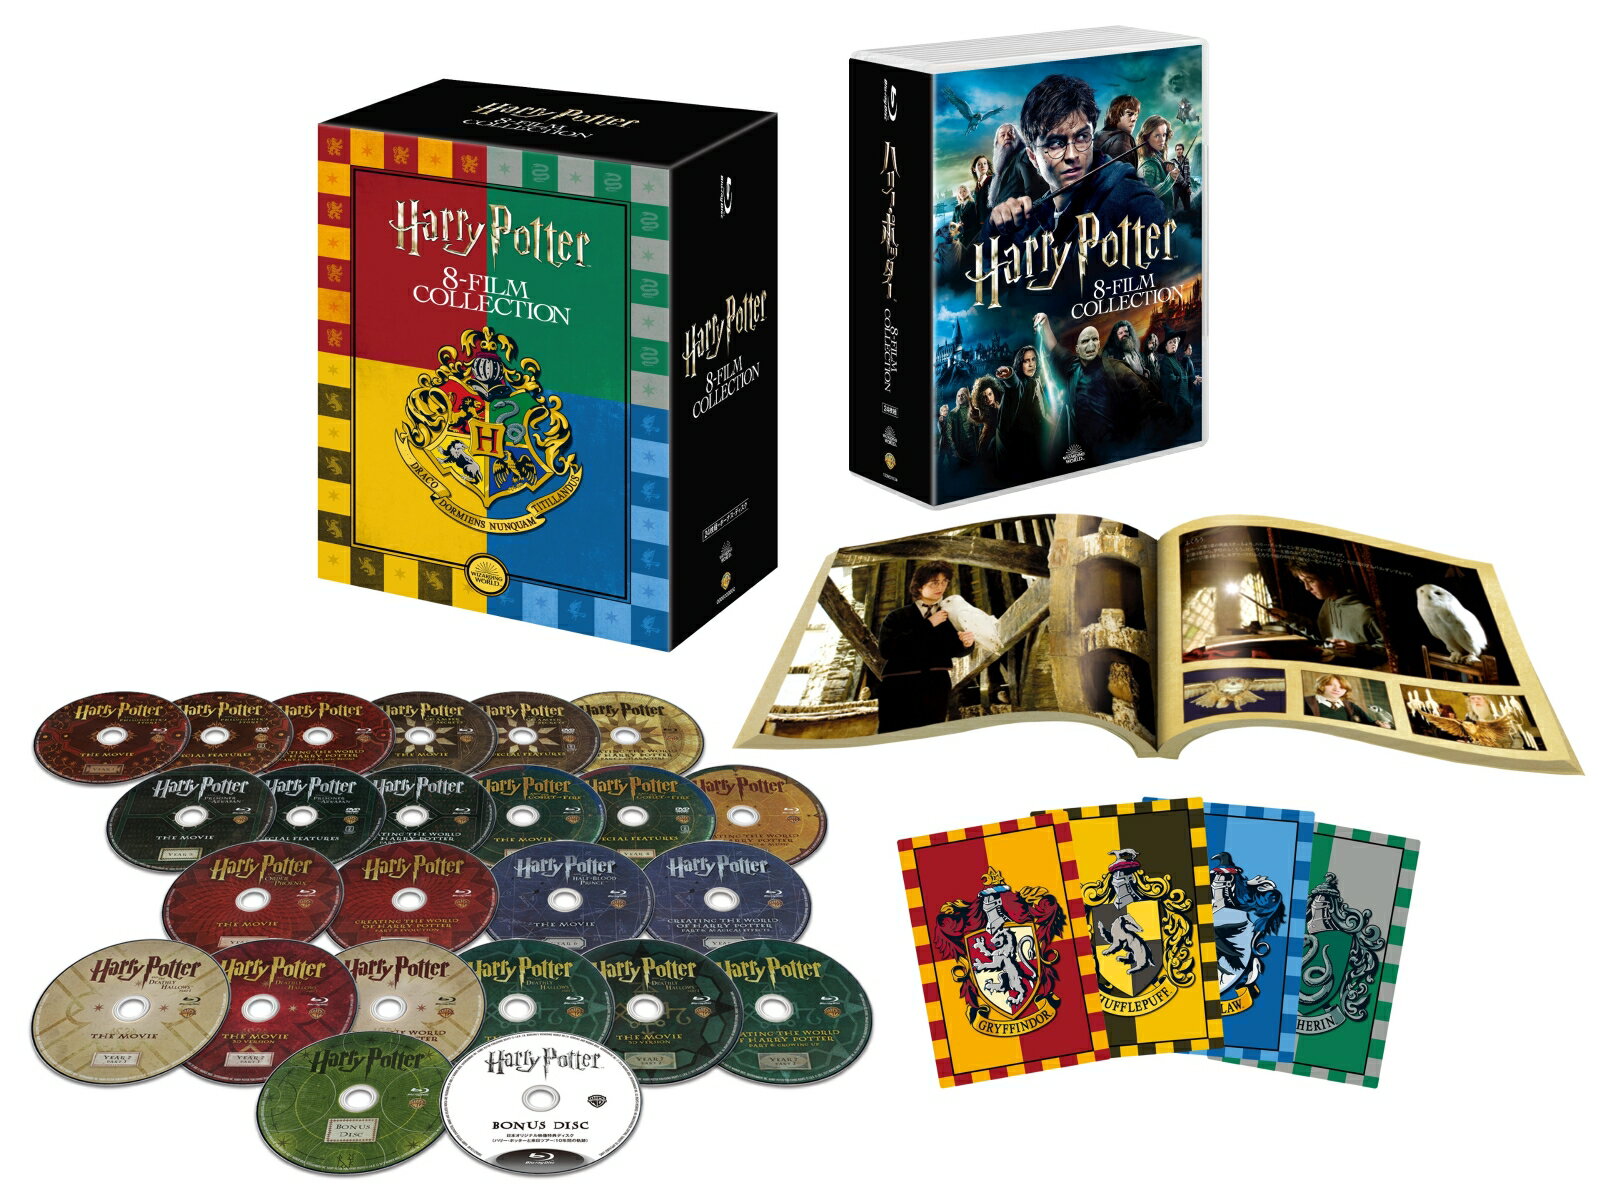 ハリー・ポッター コンプリート 8-Film BOX(バック・トゥ・ホグワーツ仕様)(初回限定生産)【Blu-ray】